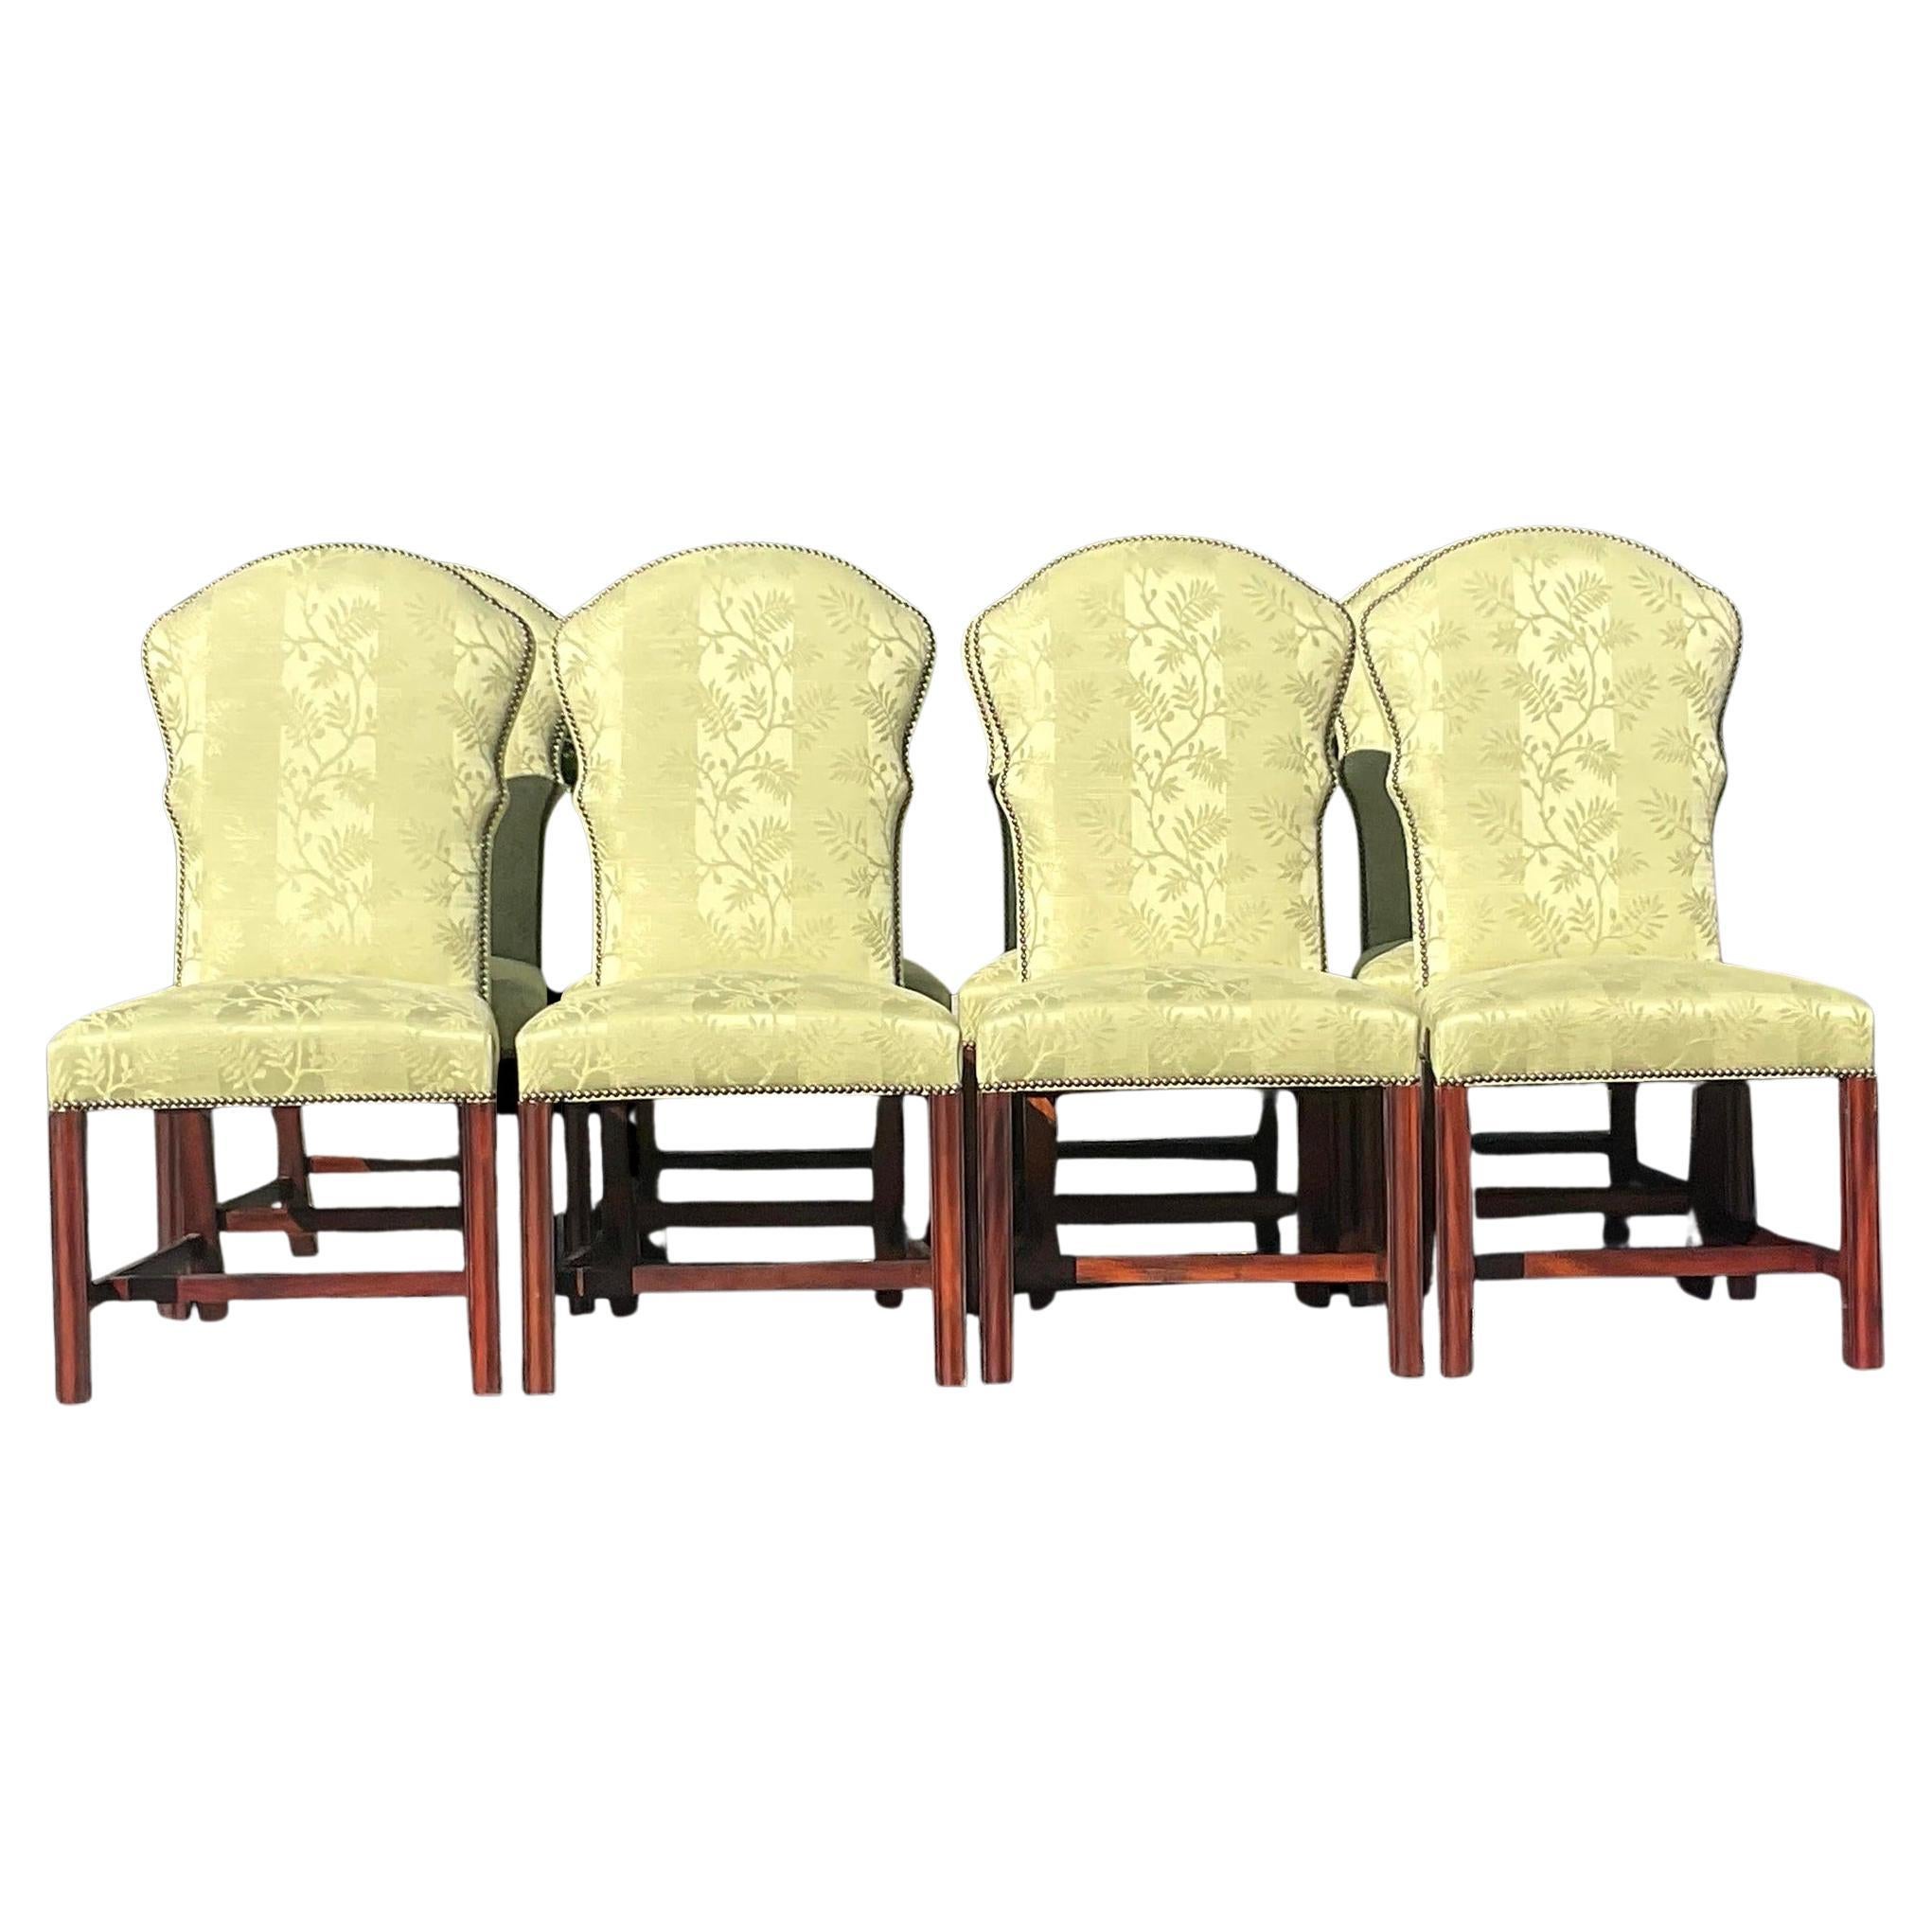 Vintage Regency-Esszimmerstühle aus Jacquard mit Nagelkopf im Regency-Stil - 8er-Set